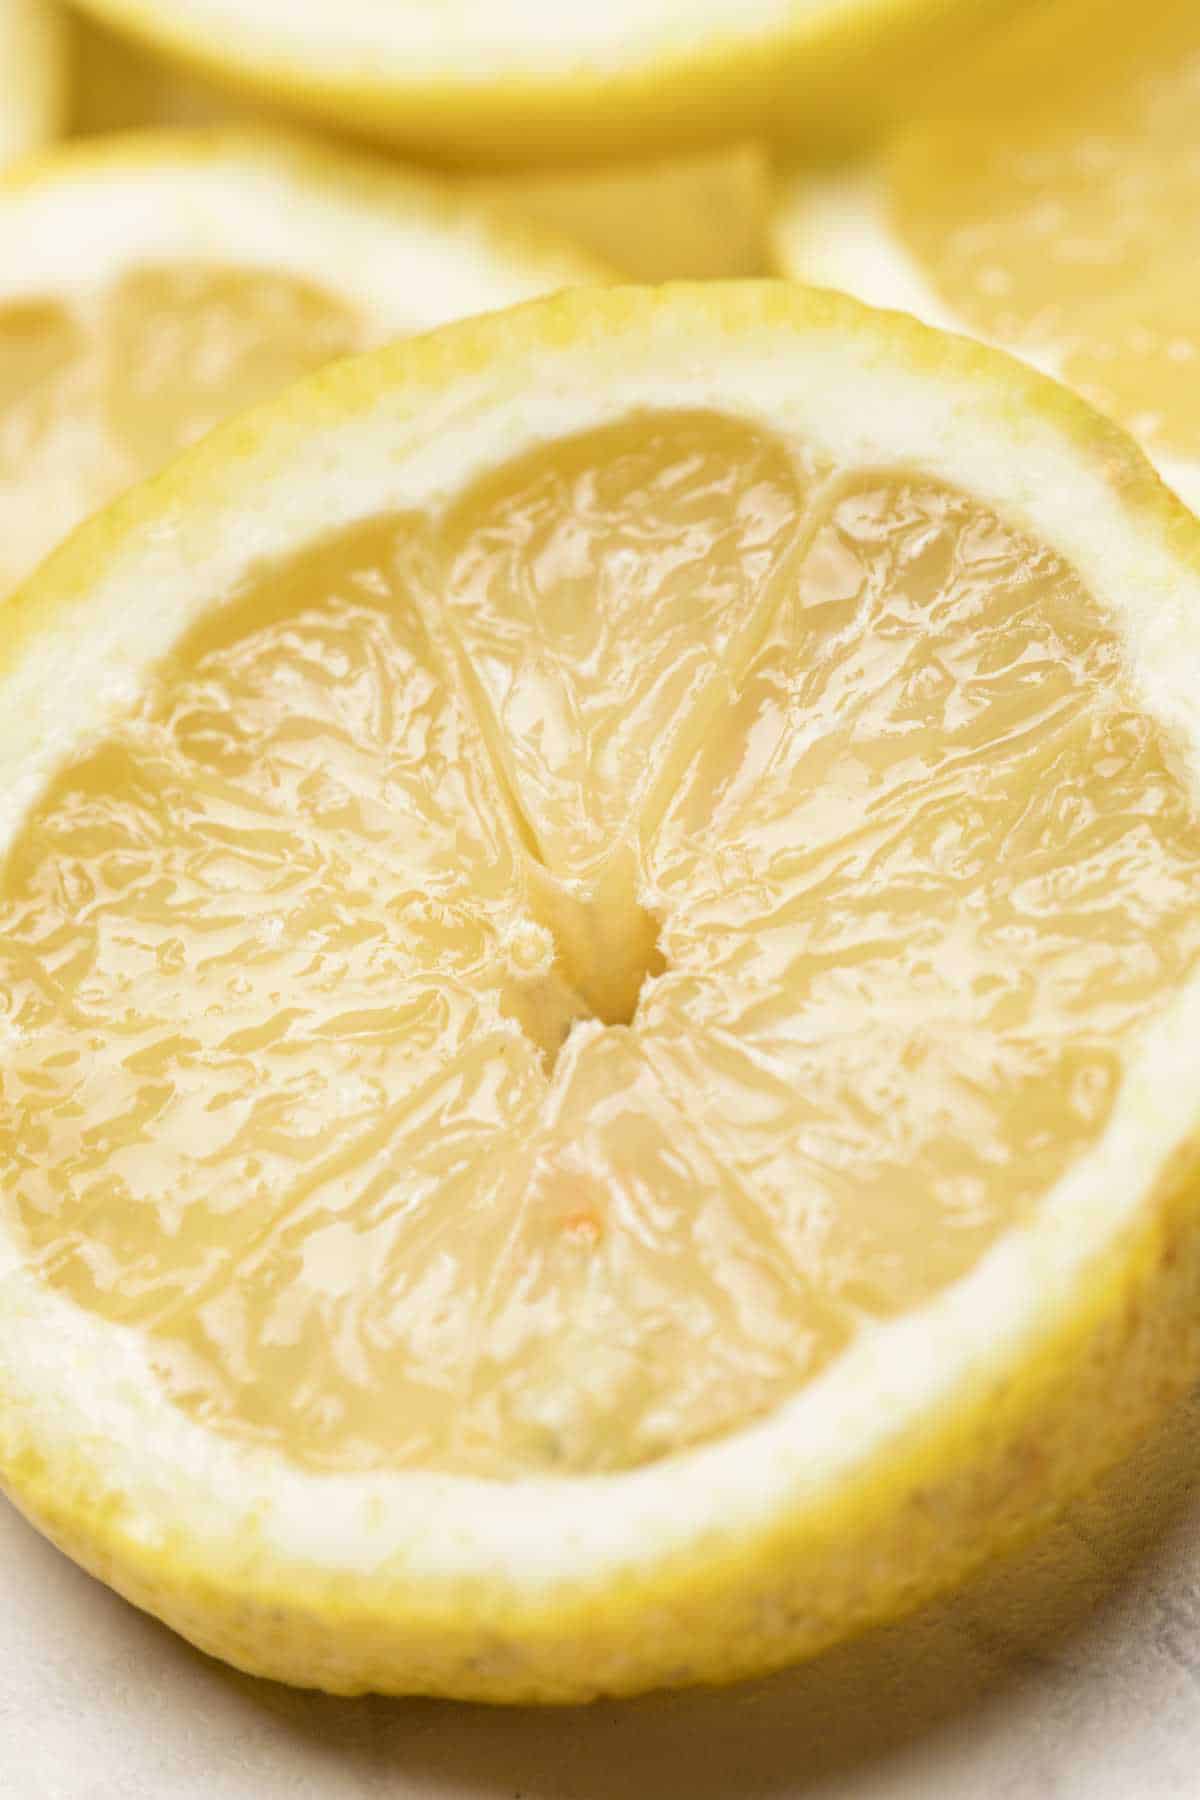 fresh, ripe lemon slices.